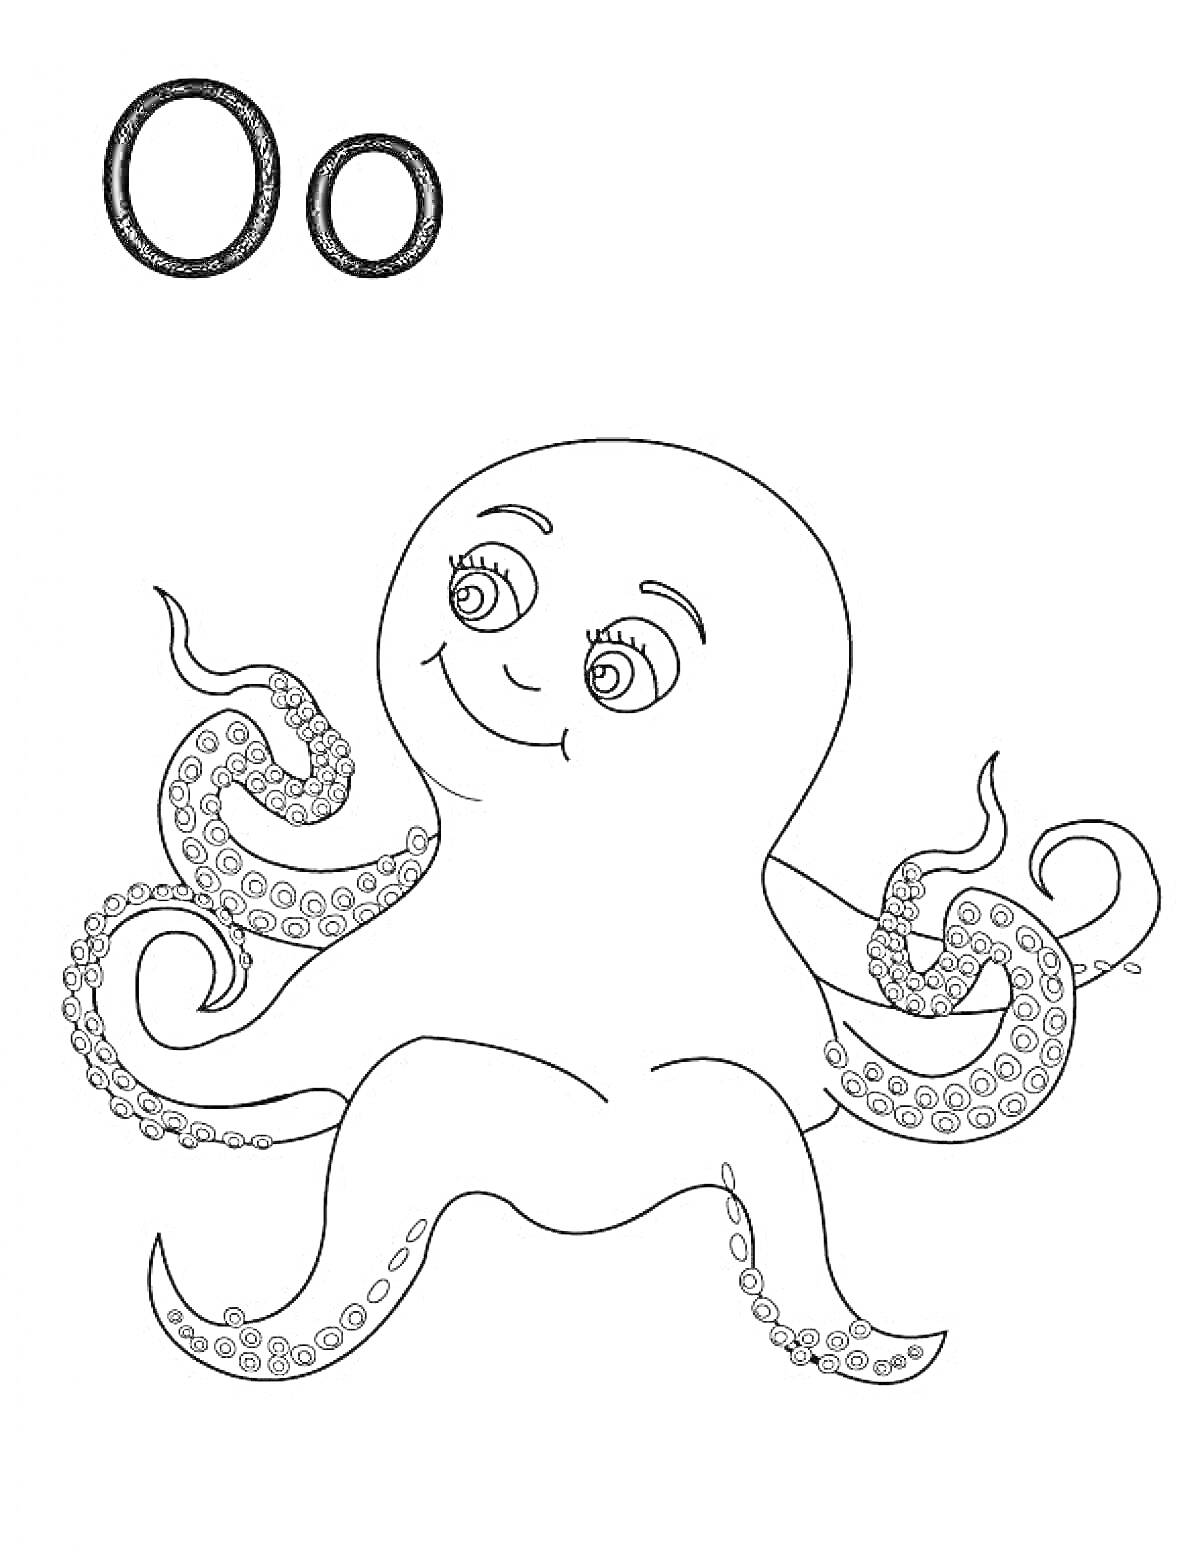 Раскраска Буква О и осьминог